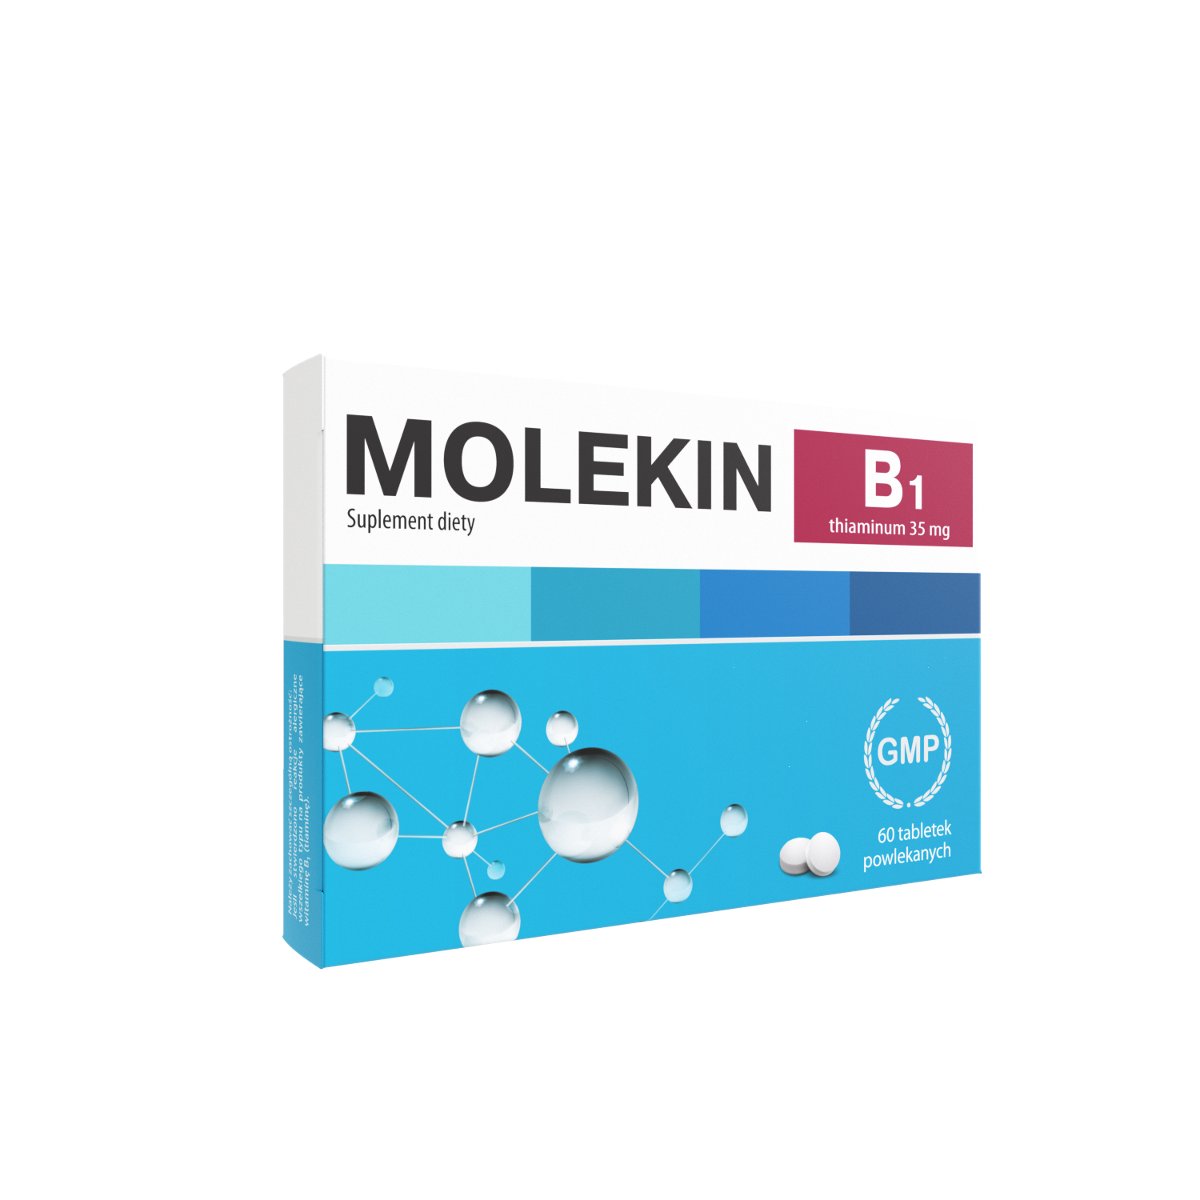 Фото - Вітаміни й мінерали Suplement diety, Molekin B1 35mg, tabletki powlekane, 60 sztuk